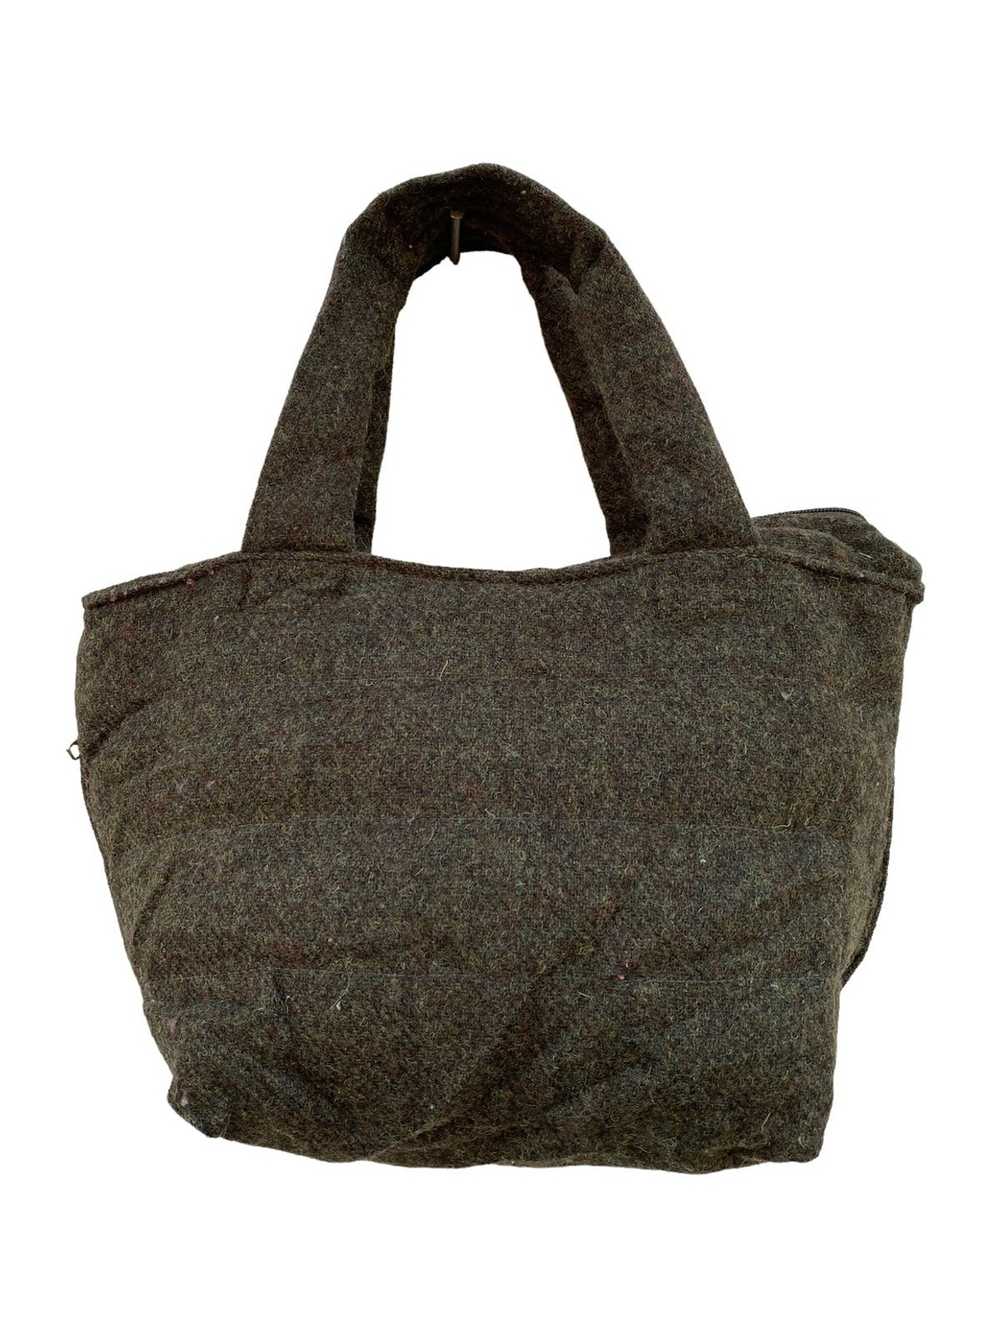 Harris Tweed × Rootote Harris tweed wool tote bag - image 2